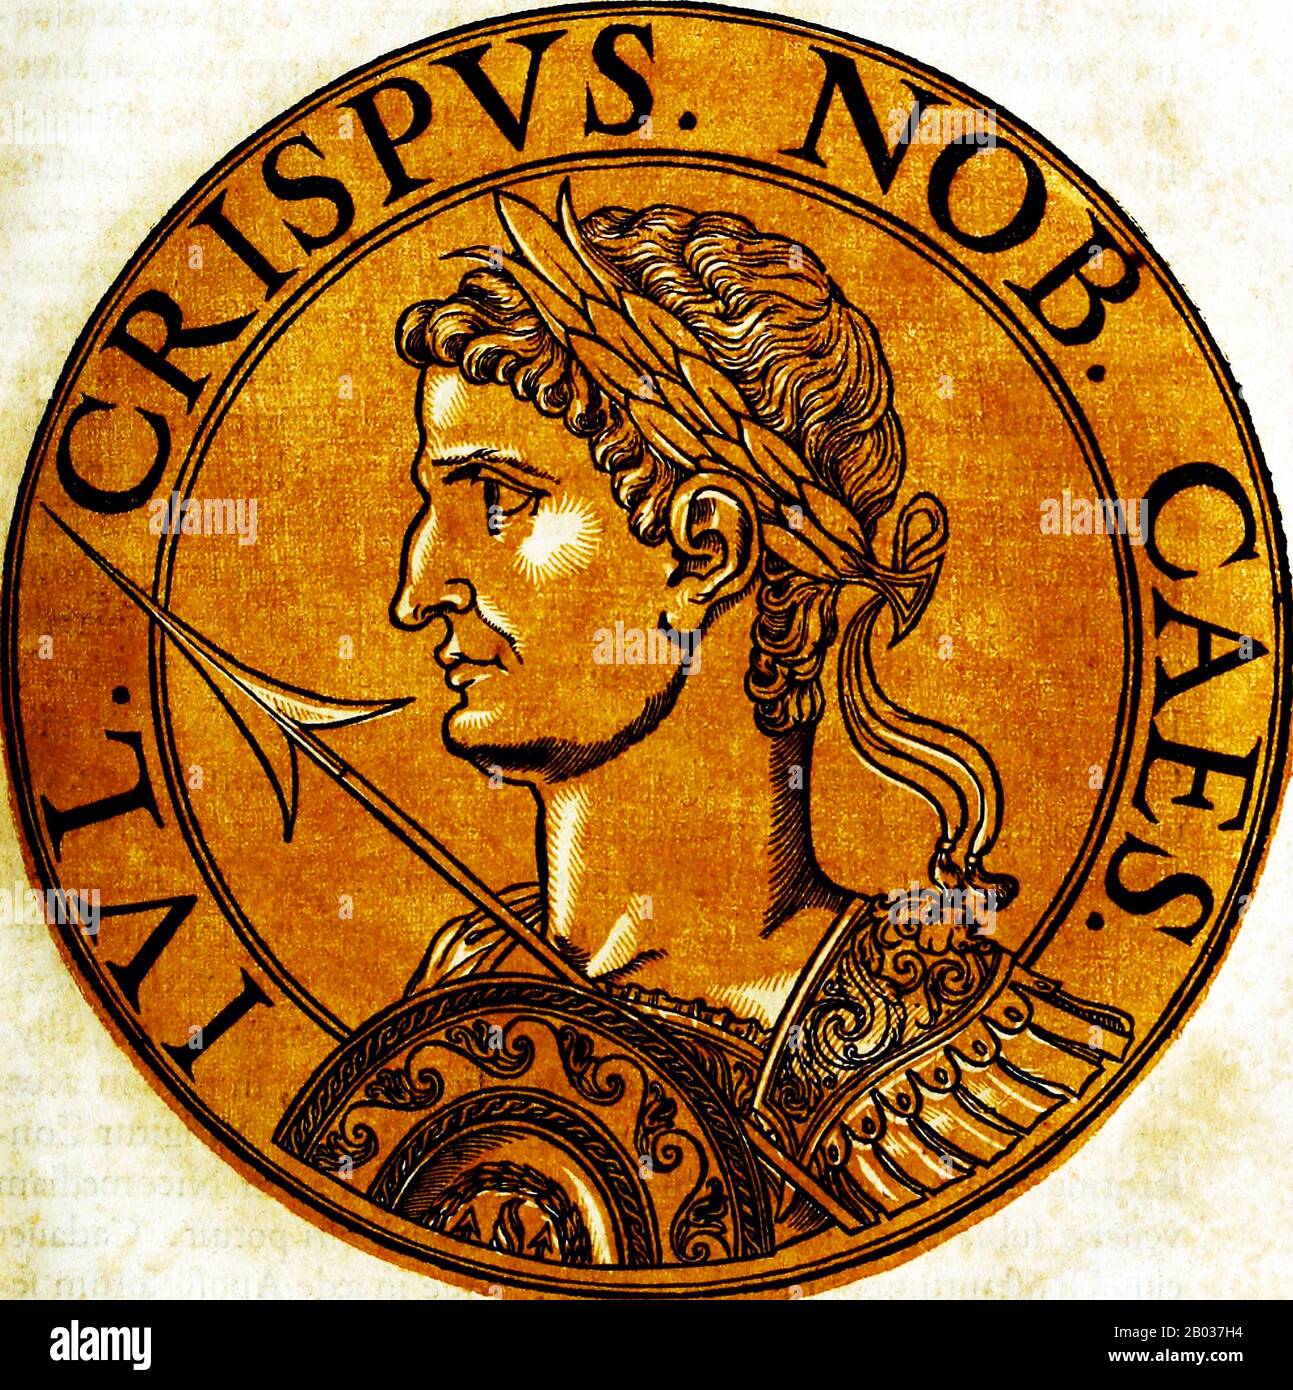 Crispus (299/305-326) était le premier fils né et héritier initial de l'empereur Constantin I et de sa première épouse Minervina. Quand son père a dû finalement mettre de côté Minervina pour épouser Fausta pour des raisons politiques, il n'a pas écarté son fils mais a continué à s'occuper de lui et aurait nommé Crispus son héritier. Crispus a été déclaré César en 317, prince de l'empire, et a été fait commandant de Gaule. Il a dirigé de nombreuses campagnes militaires victorieuses contre l'Alamanni et les Francs, assurant ainsi la présence romaine en Gaule et en Germania. Il a également combattu aux côtés de son frère contre l'empereur hostile Licinius Banque D'Images